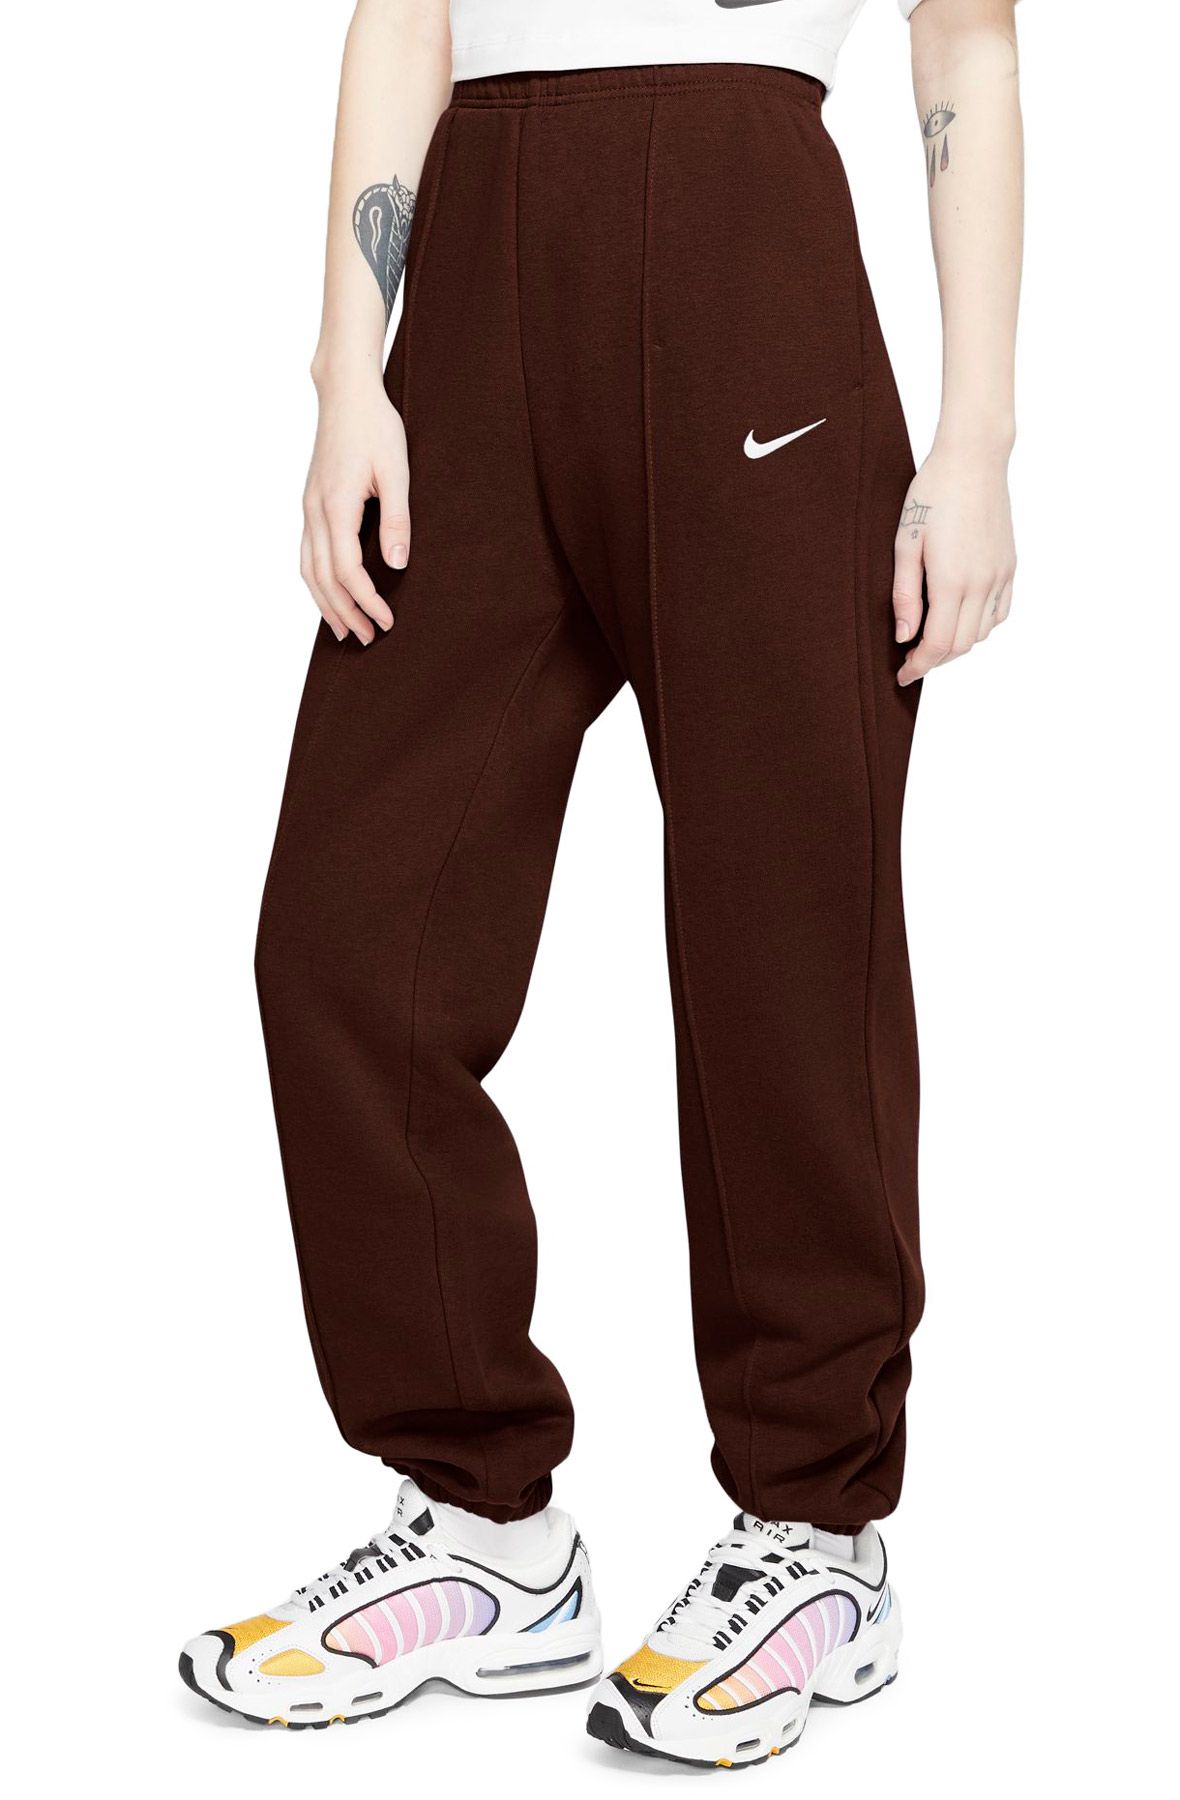 Nike Sports Wear Essential Fleece Brown Sweatpants